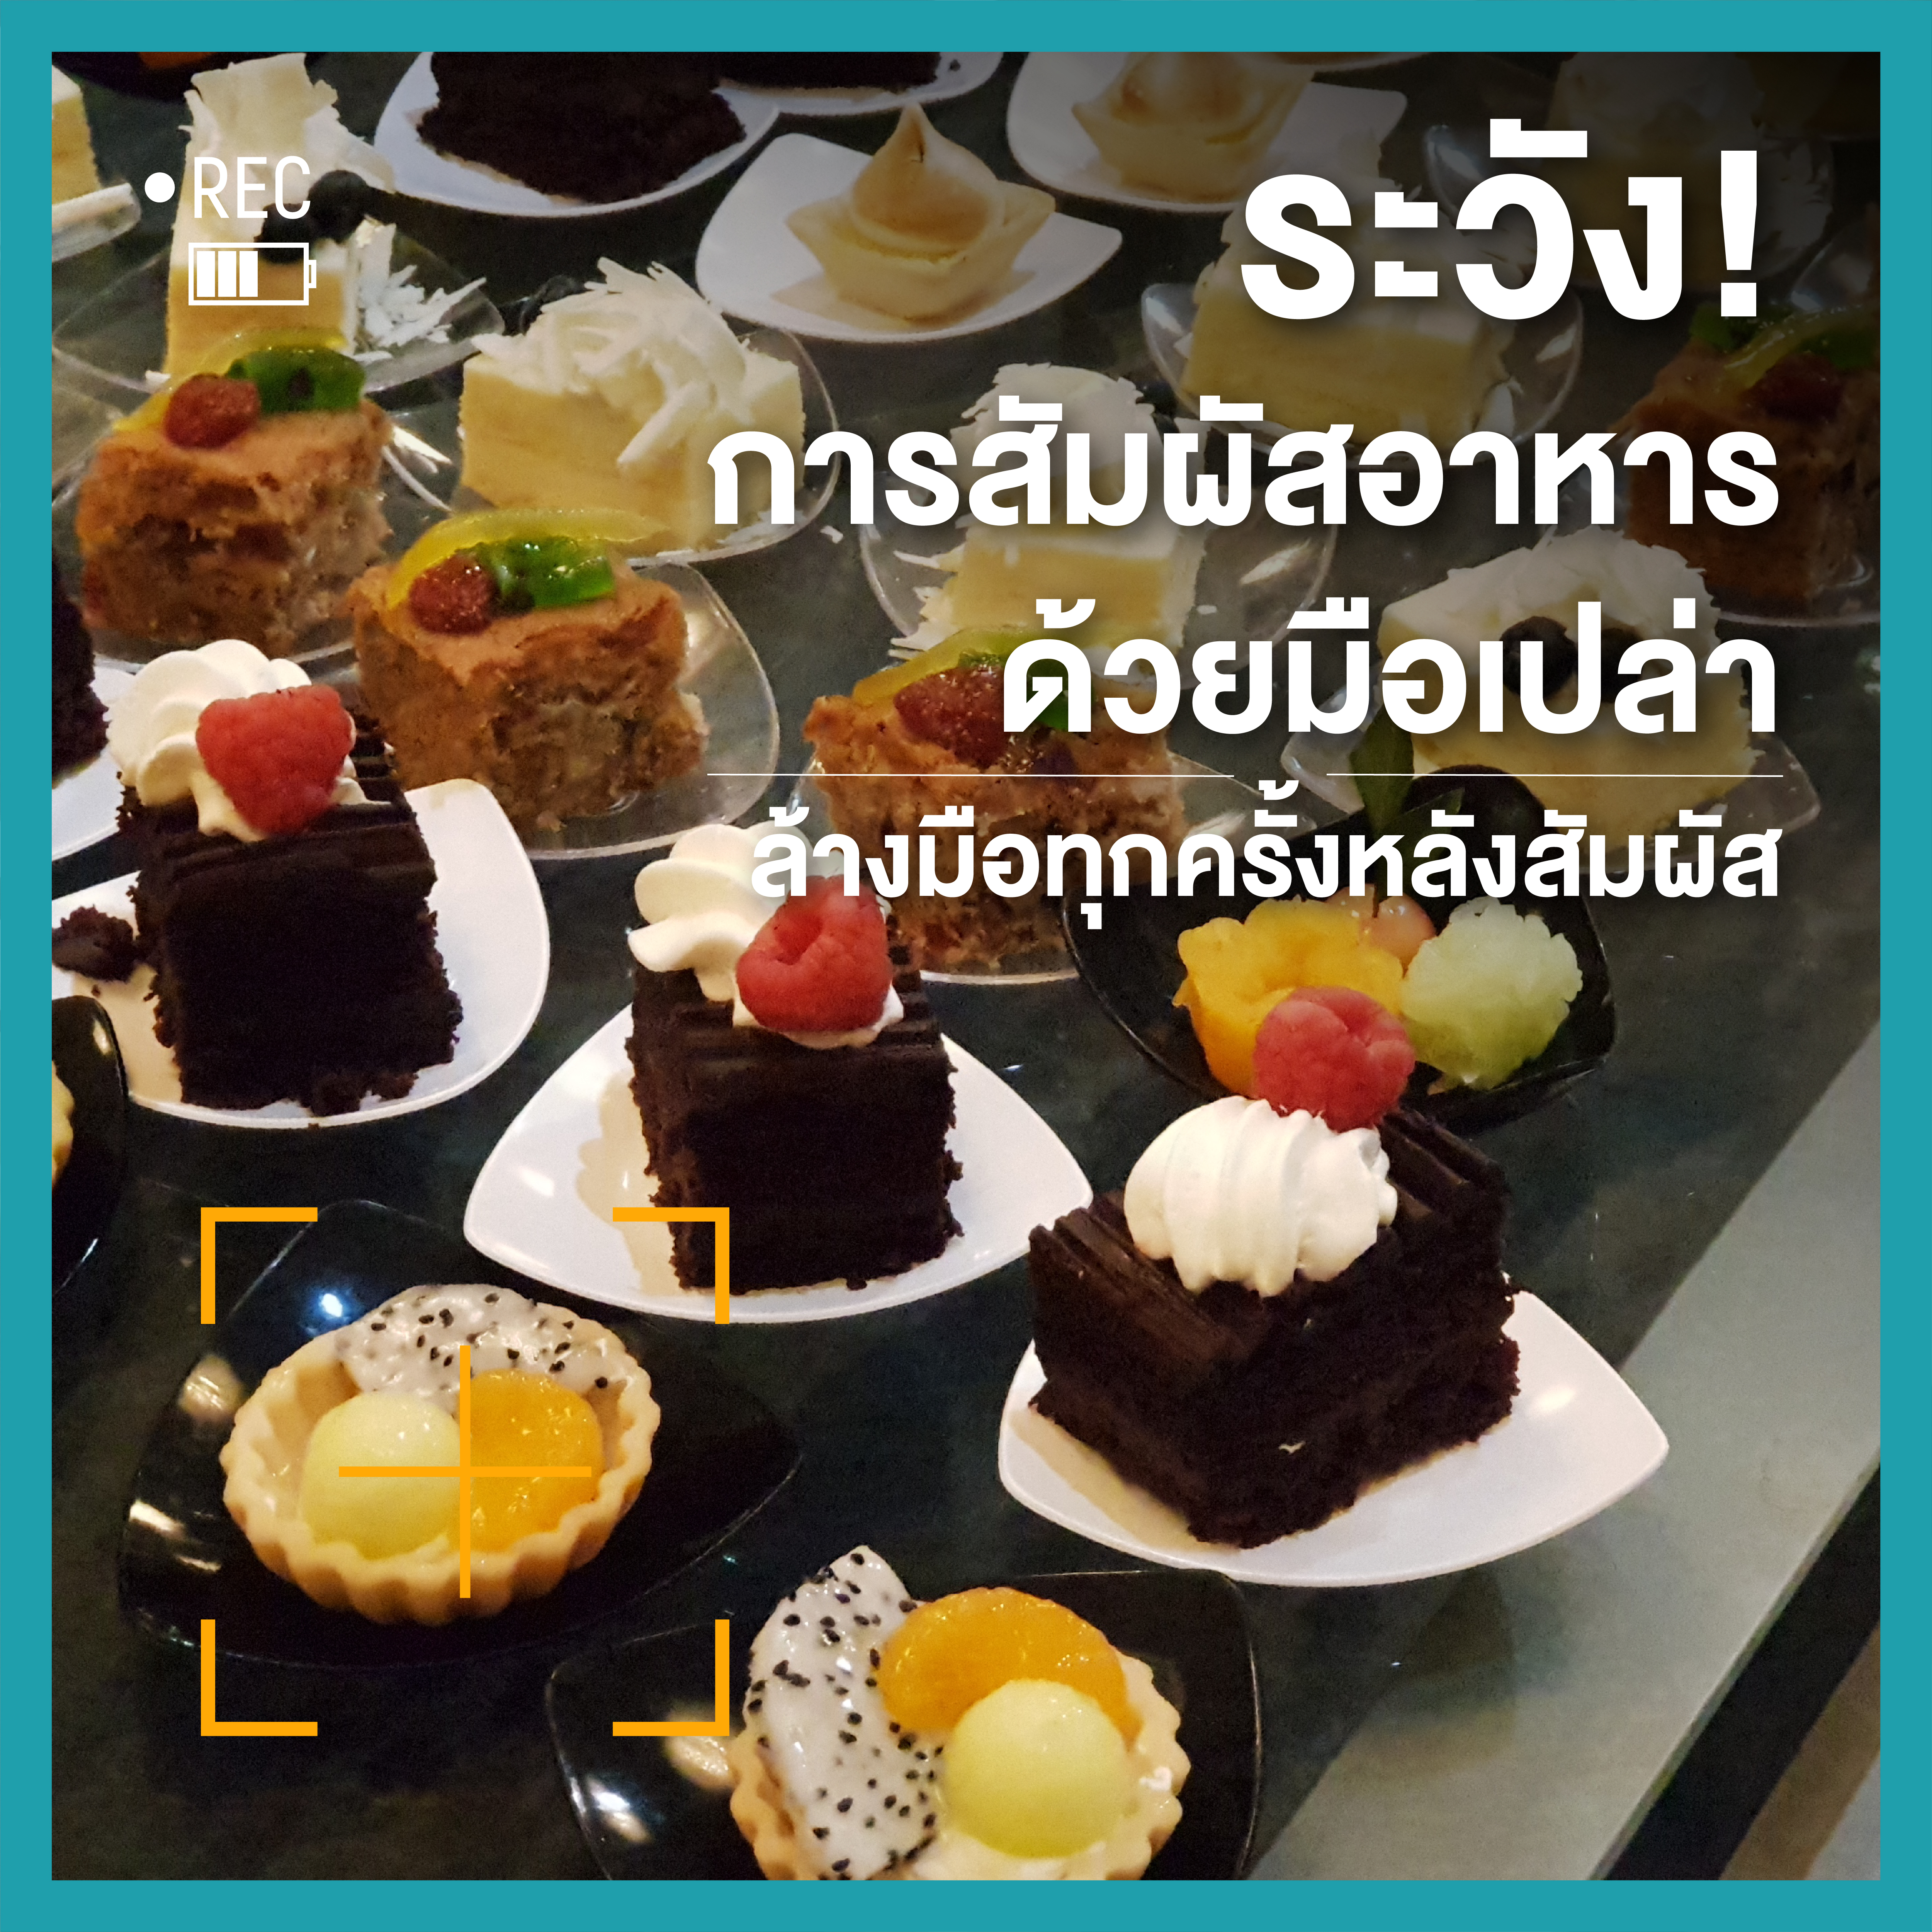 กินข้าวร่วมกับผู้อื่นคุณเสี่ยงรับเชื้อ (โควิด) จากอะไรบ้าง thaihealth